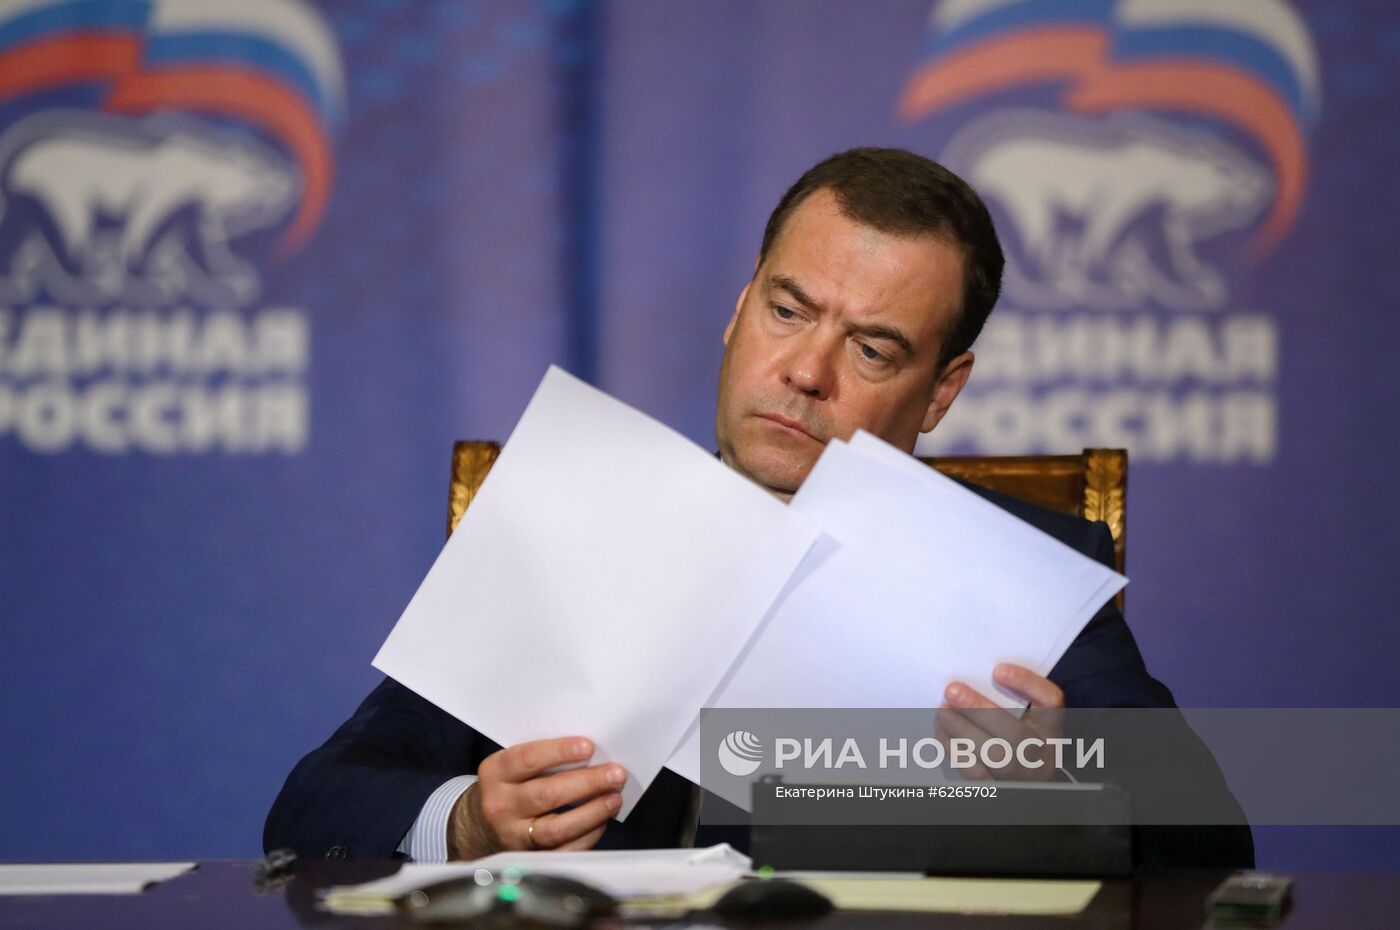 Председатель "Единой России" Д. Медведев провел онлайн-совещание по поддержке туристической отрасли